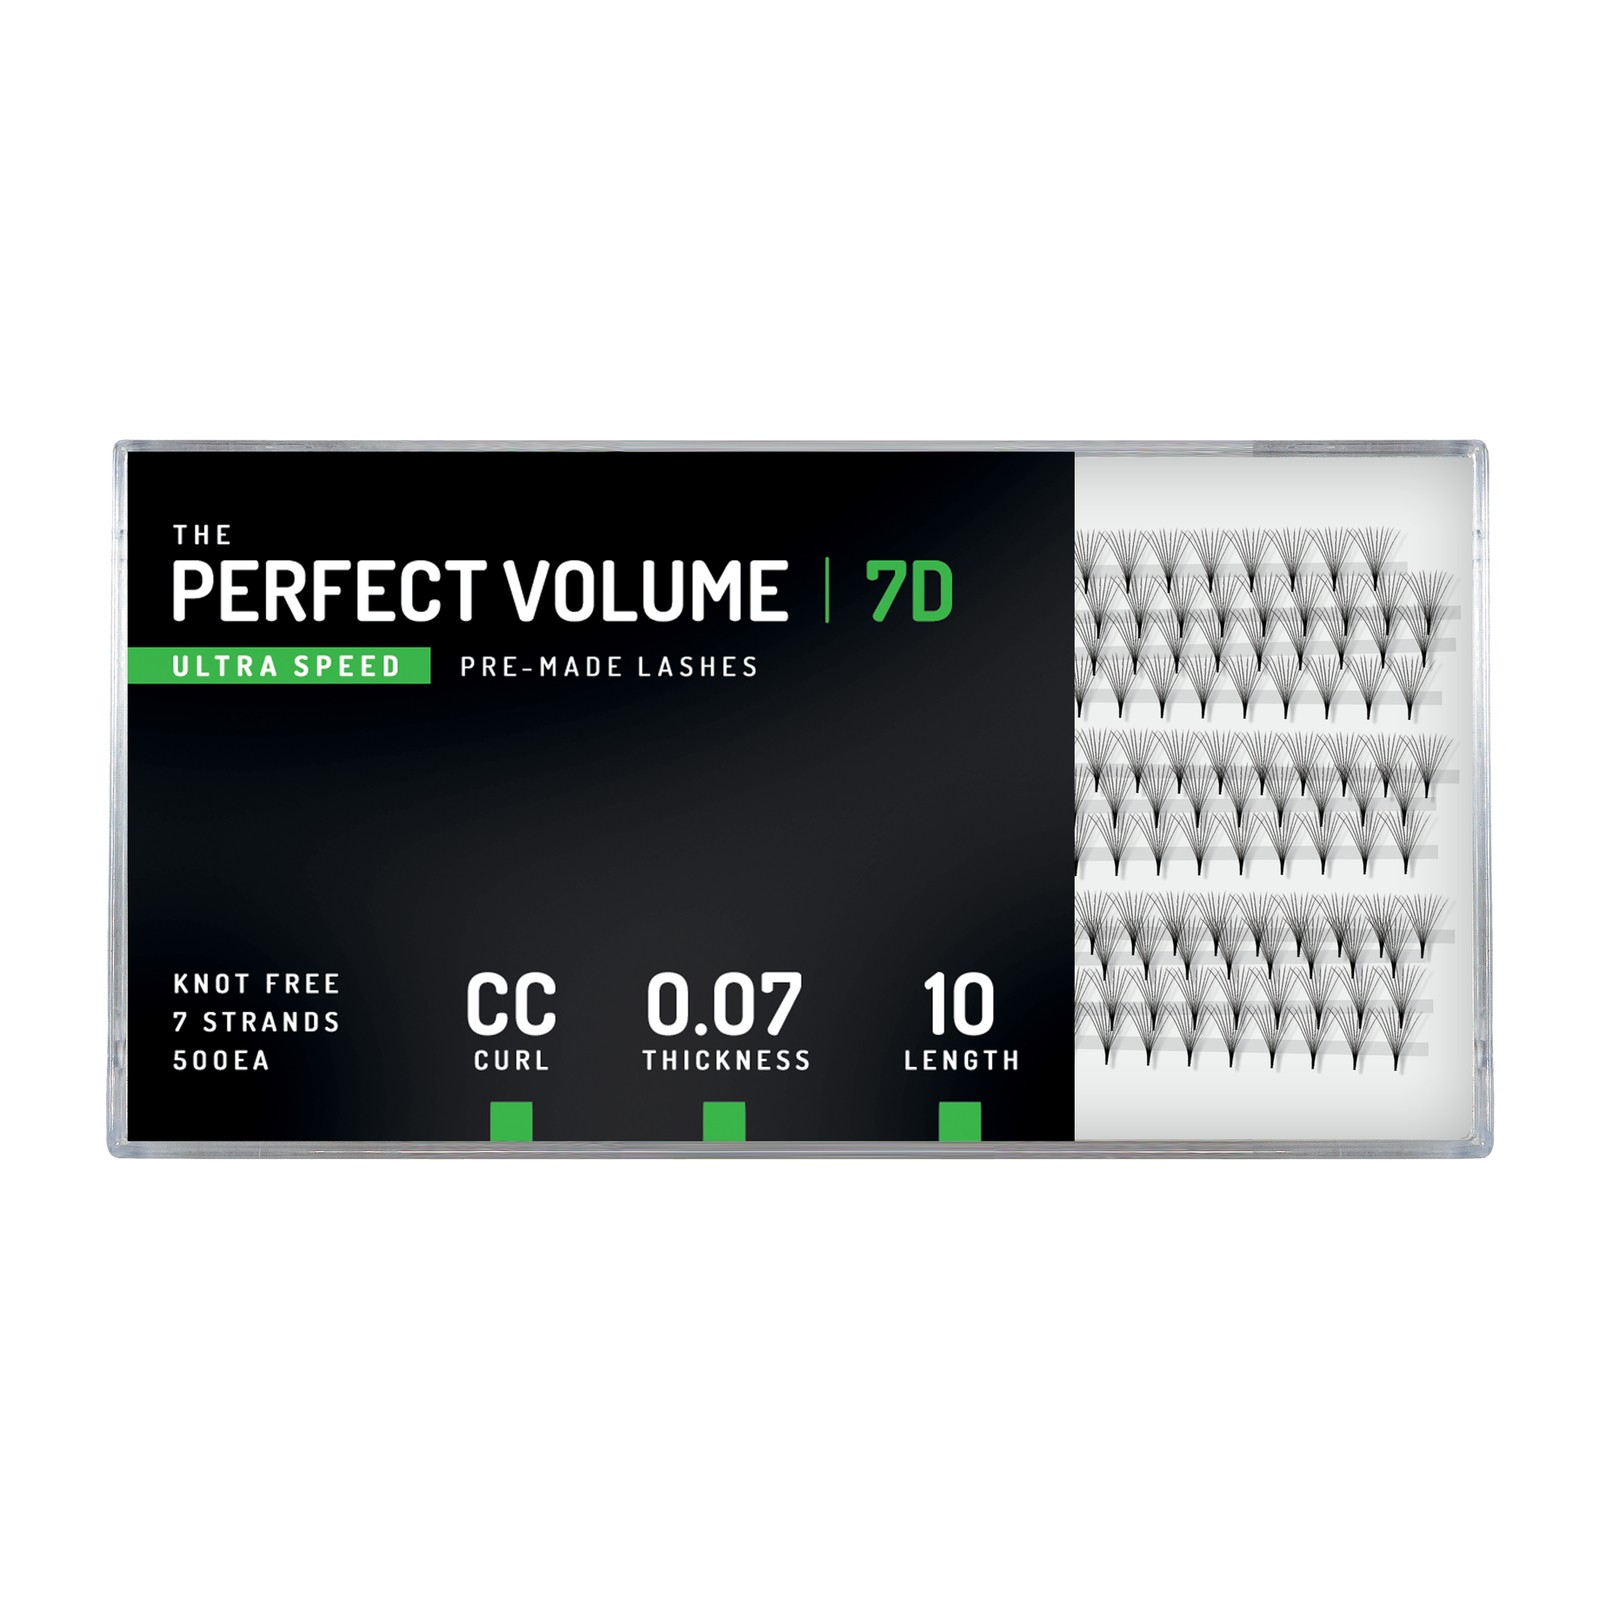 Volume Perfeito Ultra Velocidade -  500 buchețele pré-fabricados 7D -  10 mm, CC, 0,07 mm